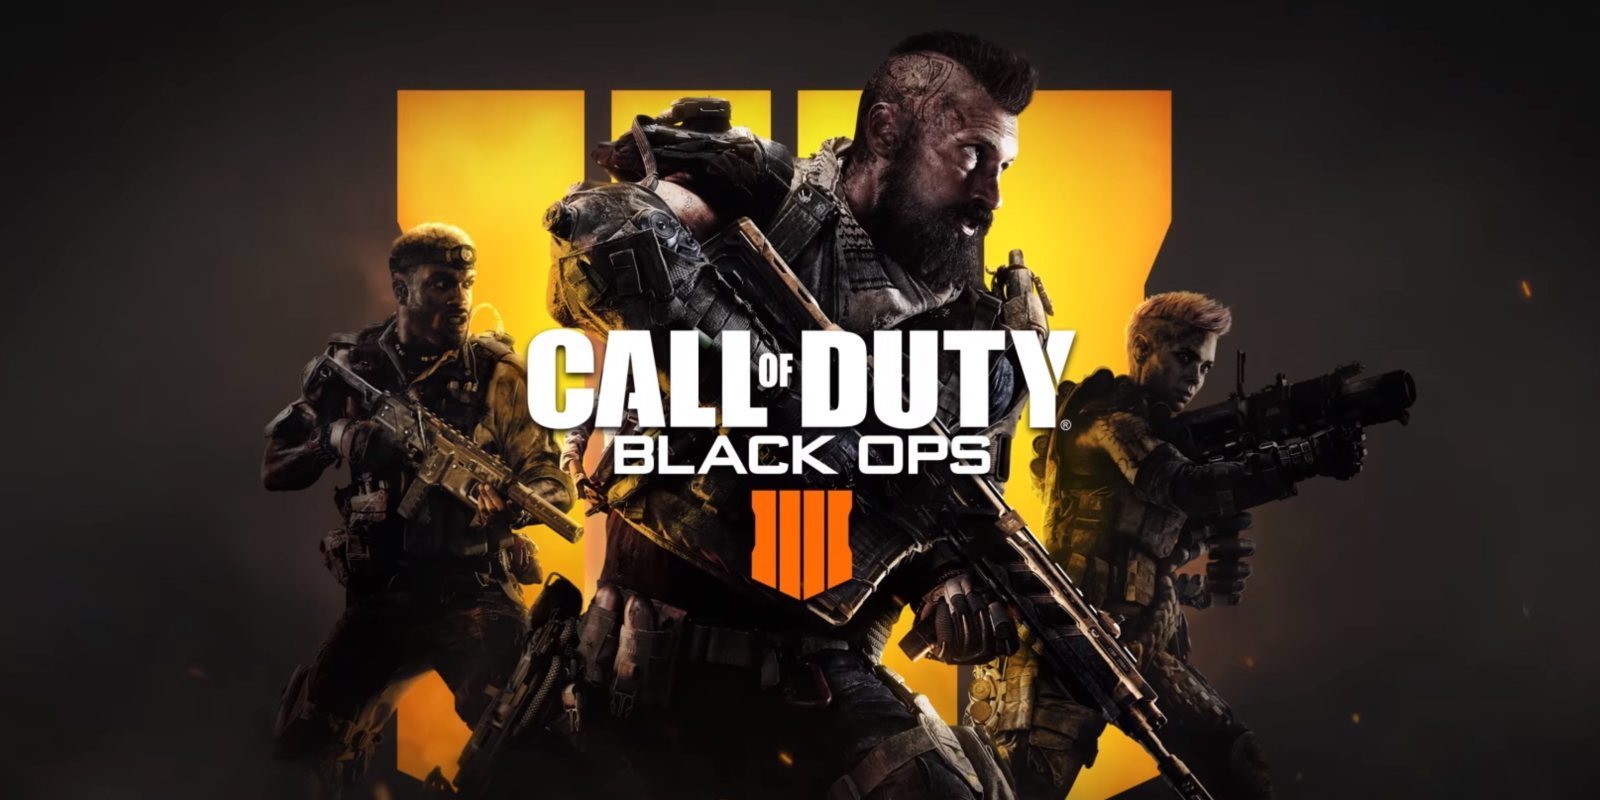 Avance de 'Call of Duty: Black Ops 4': Modo battle royale, ausencia de campaña, zombis y más